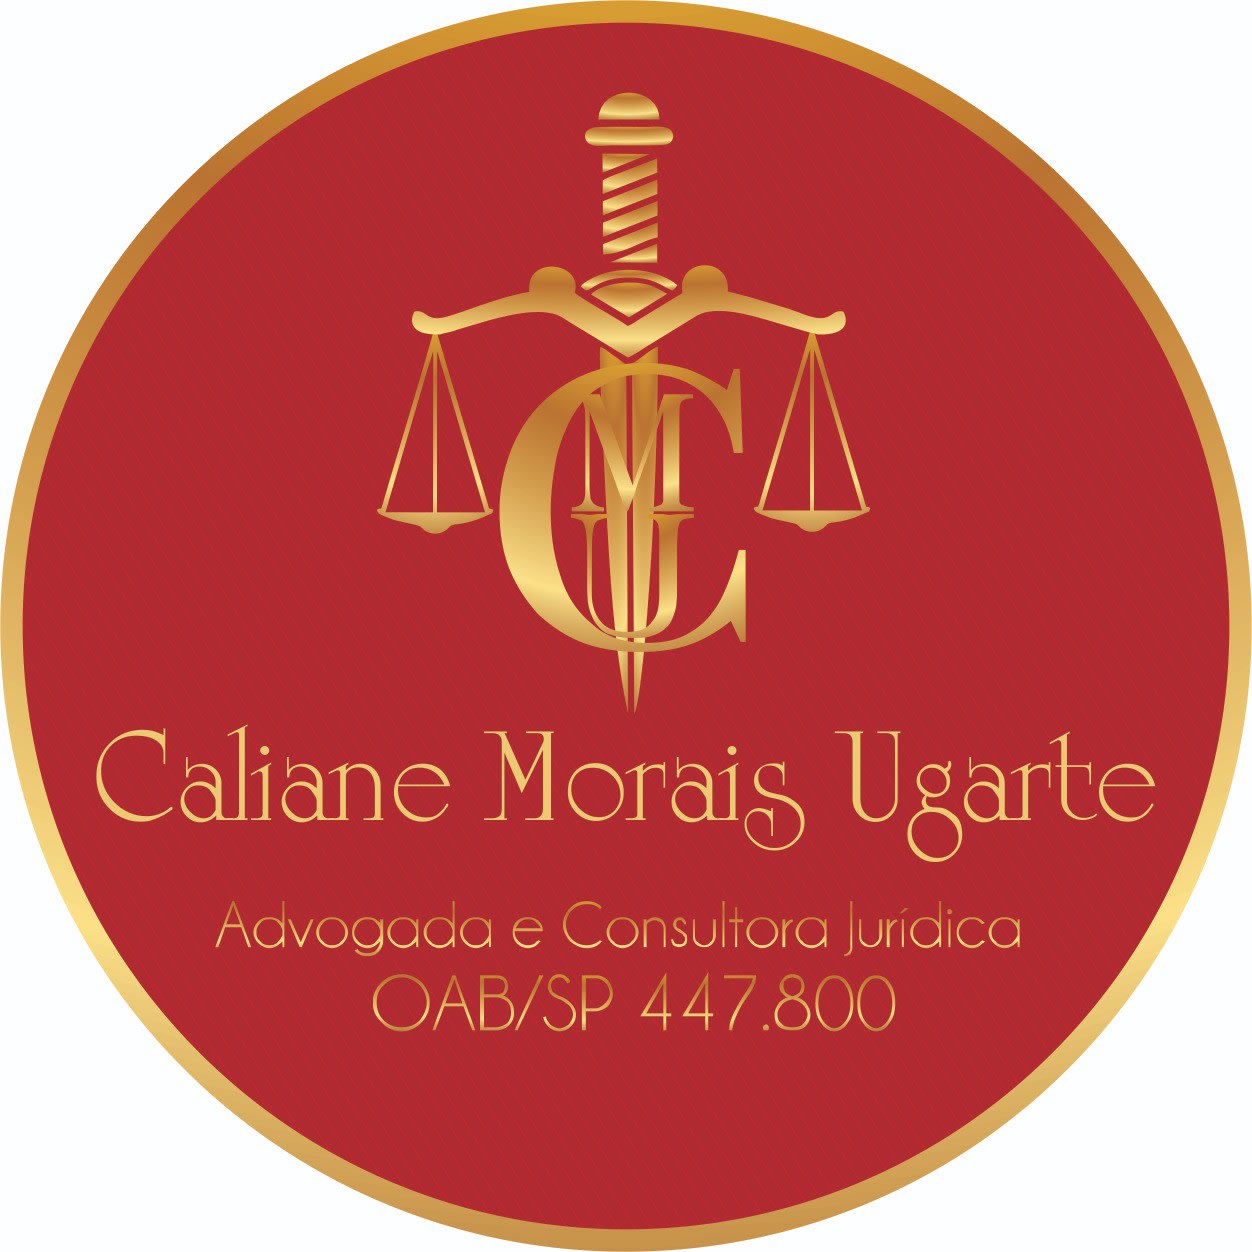 Caliane Morais Ugarte Advogada & Consultora Jurídica